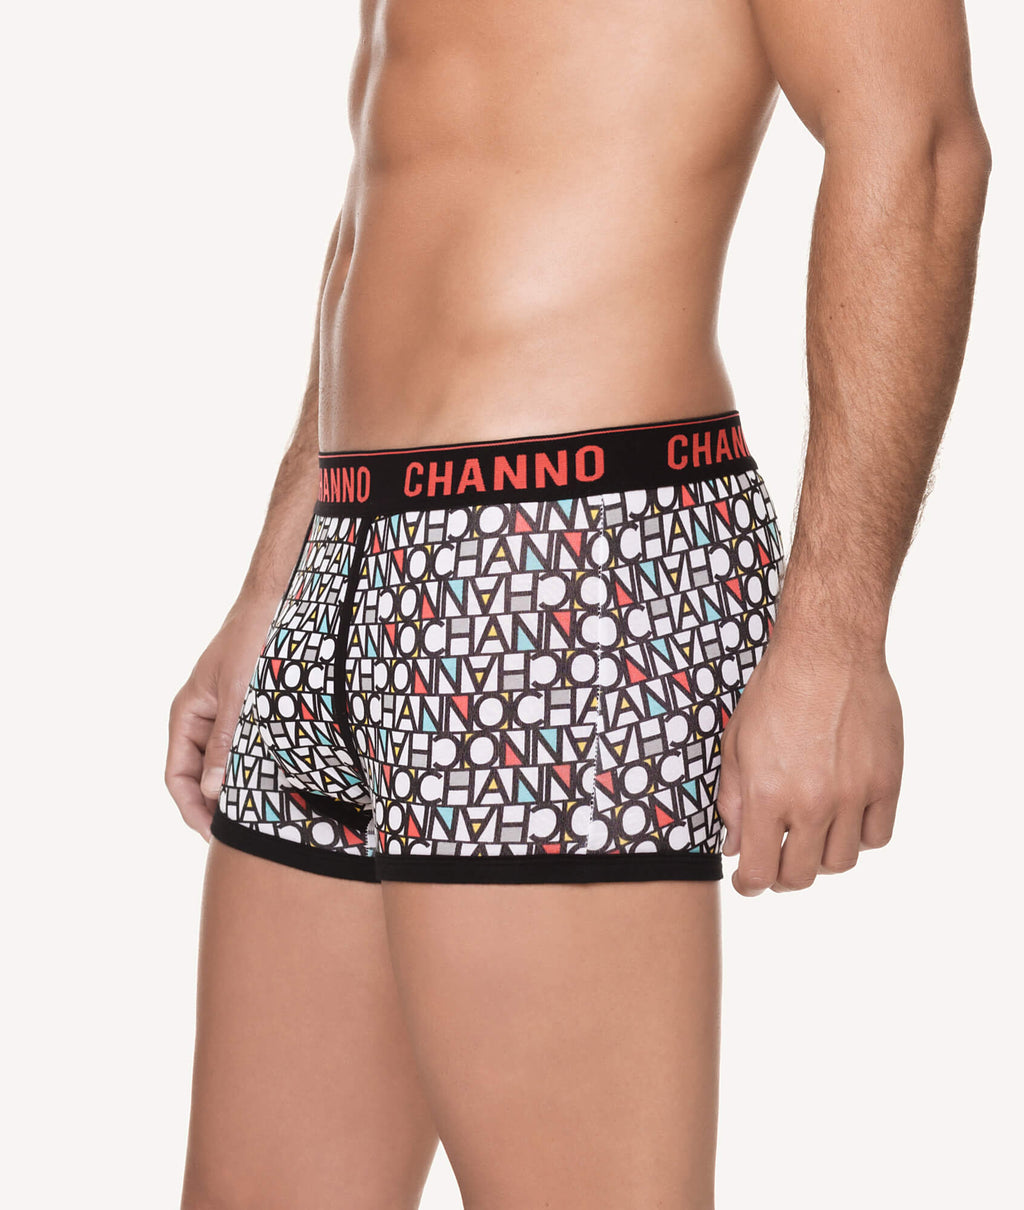 Calzoncillos boxer cortos algodón estampado logo CHANNO lateral - CHANNO Man